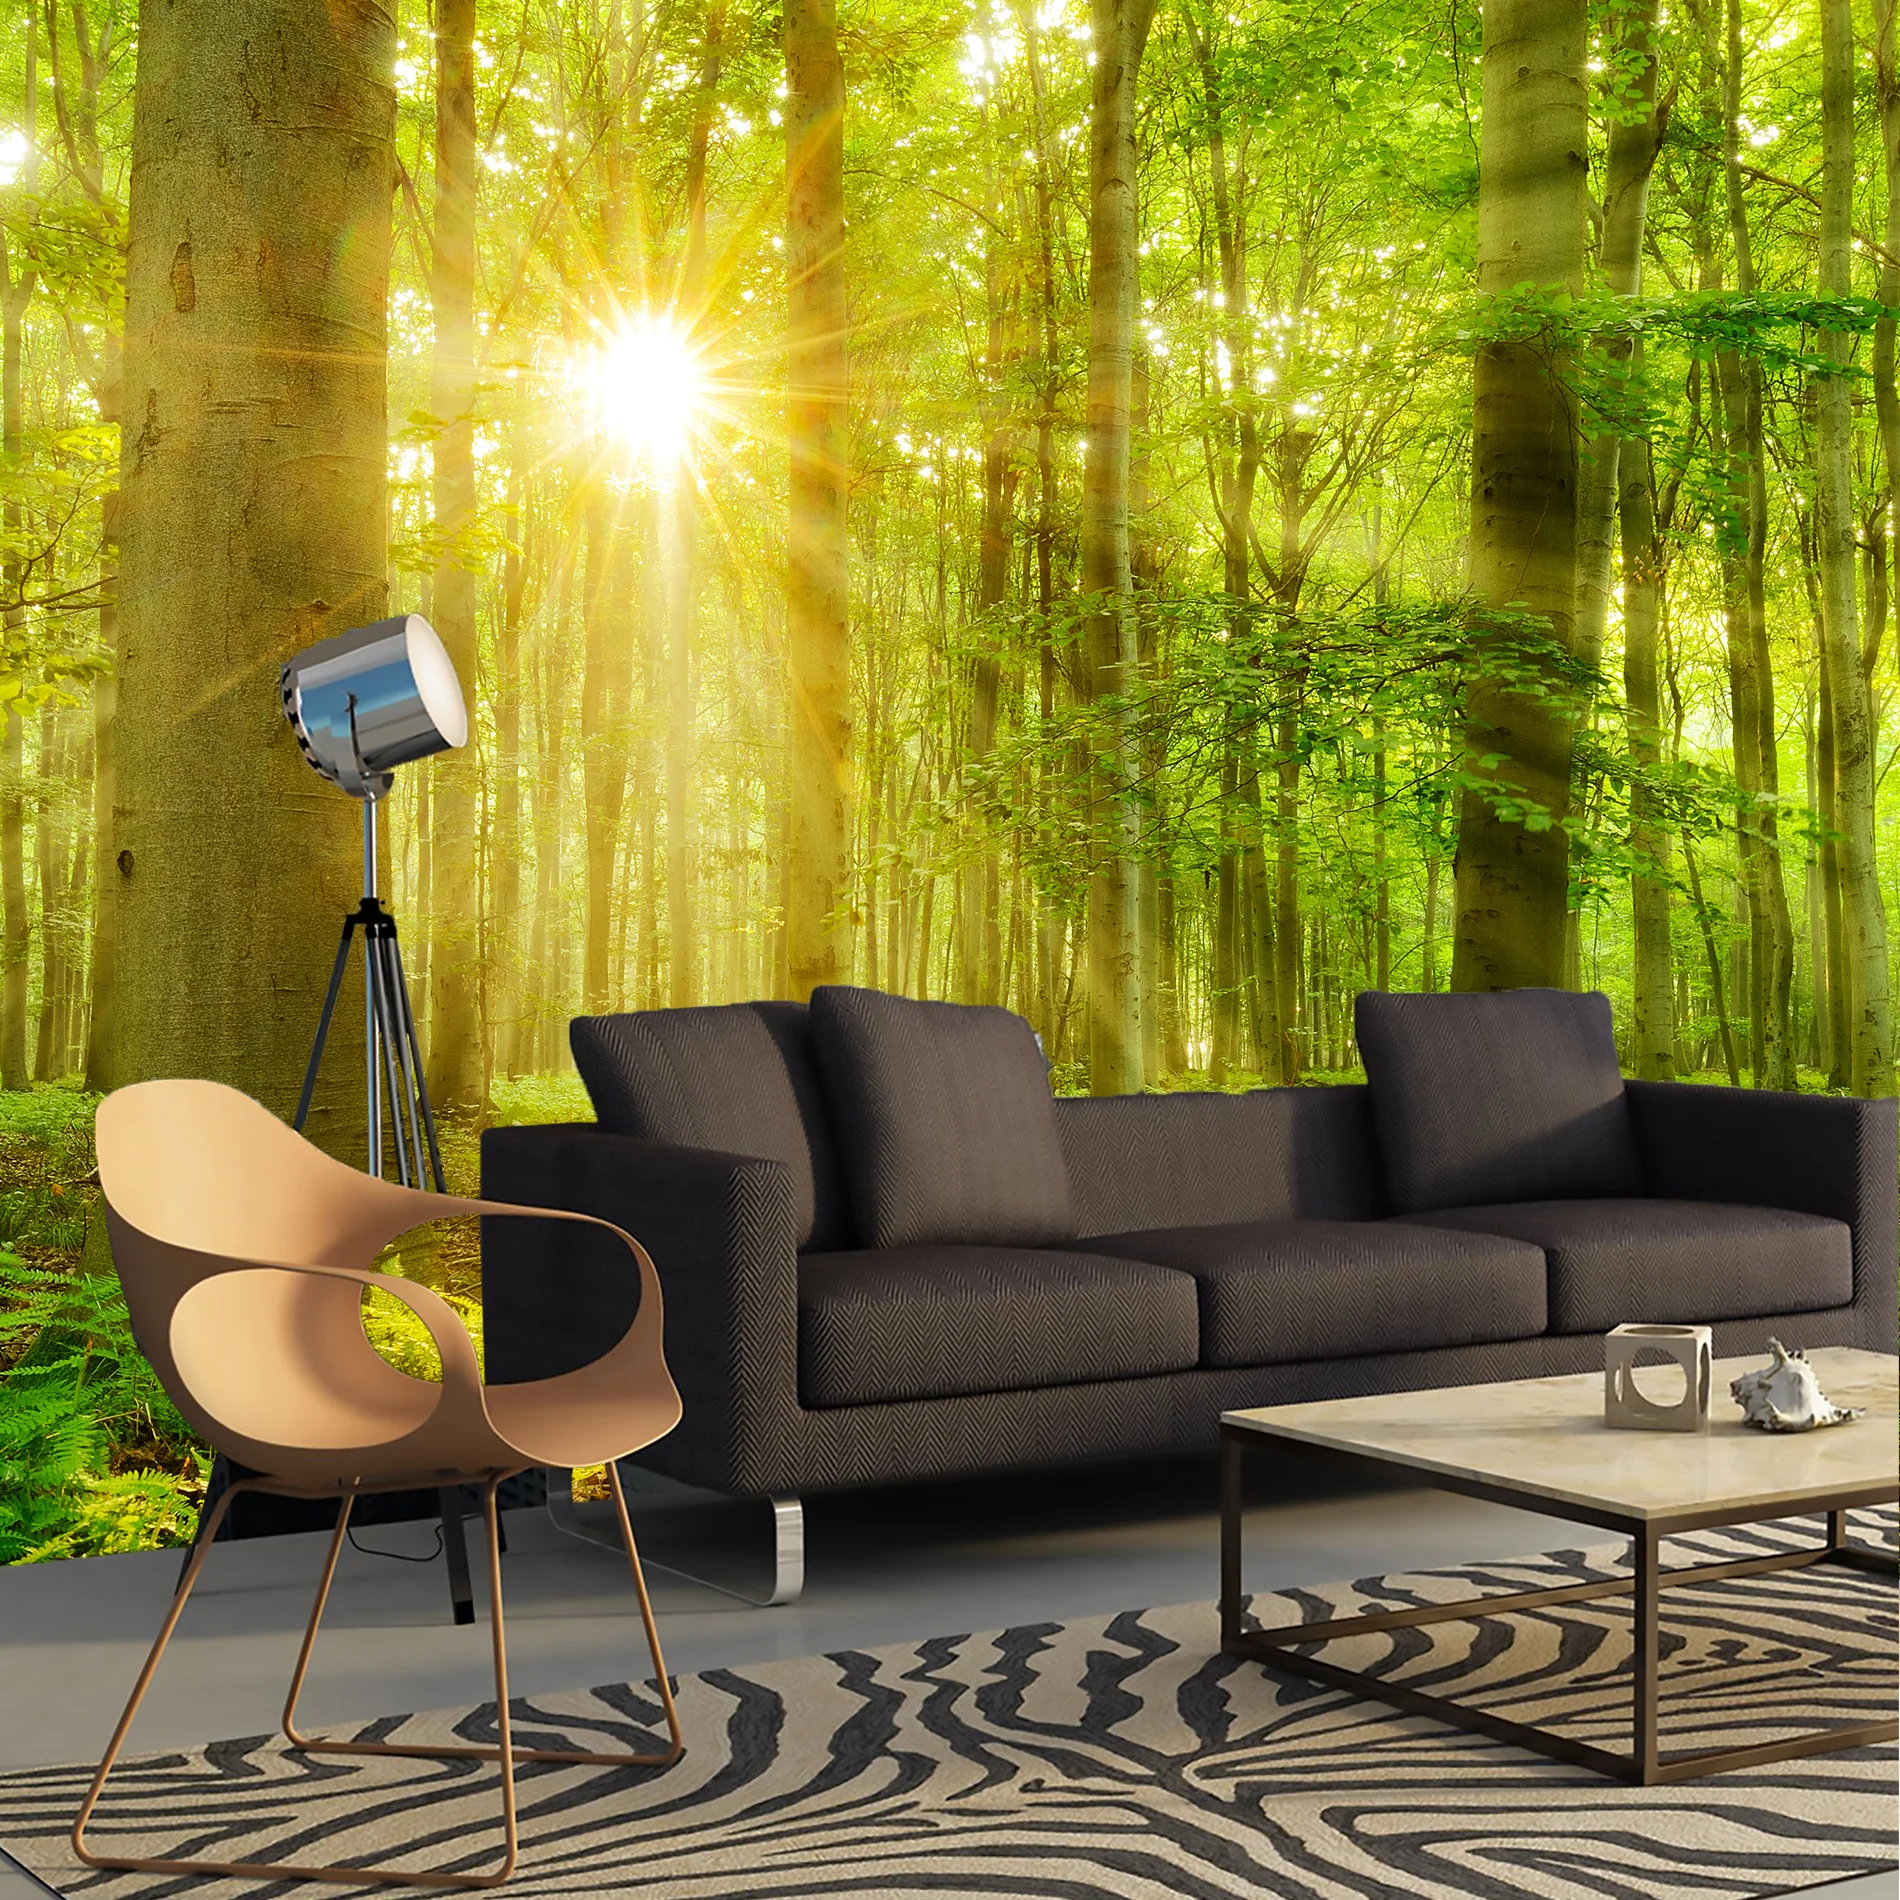 Лес 3D фото обои на стену деревья трава солнце для зала кухни спальни фотообои